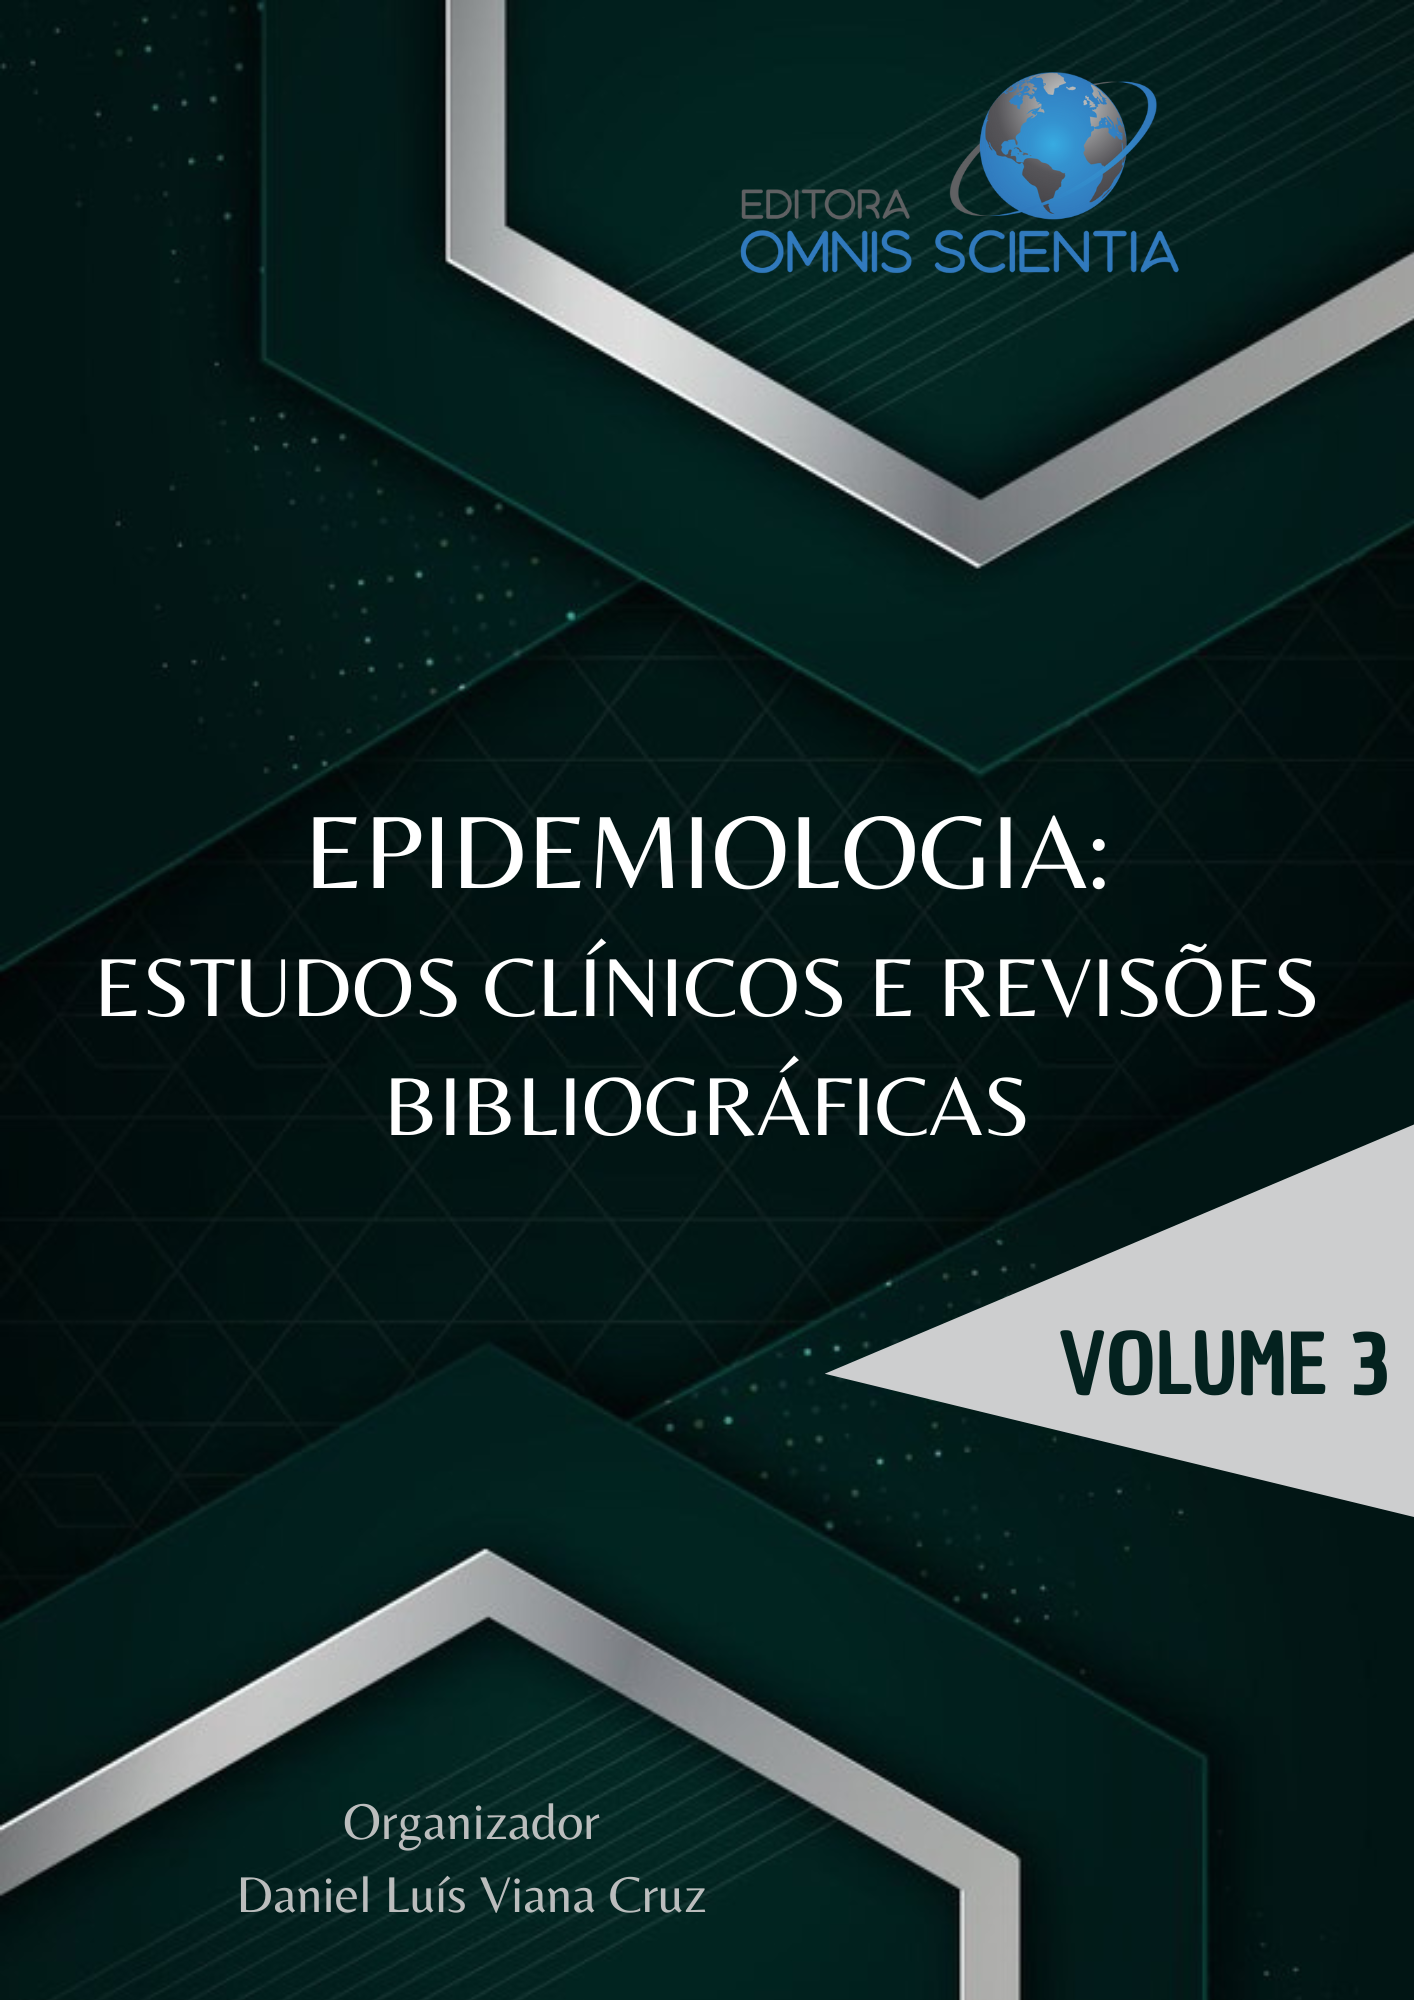 EPIDEMIOLOGIA: ESTUDOS CLÍNICOS E REVISÕES BIBLIOGRÁFICAS, VOL 3